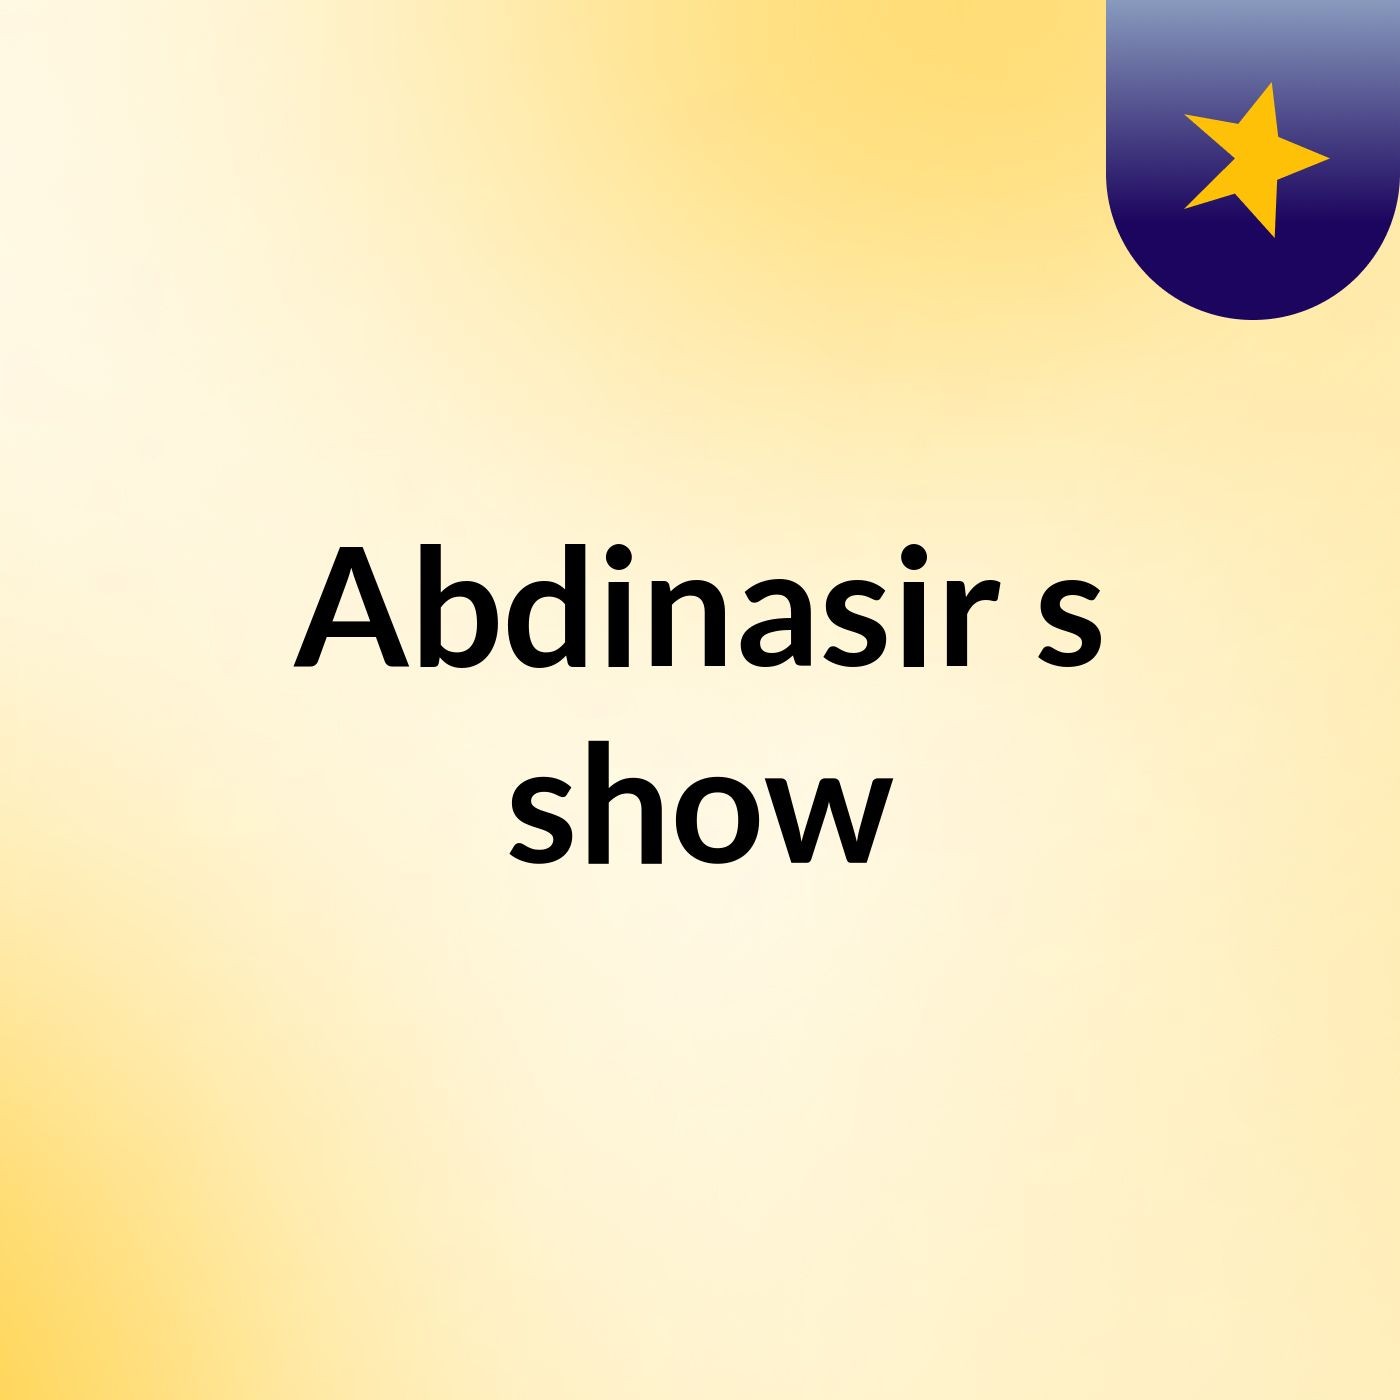 Abdinasir's show